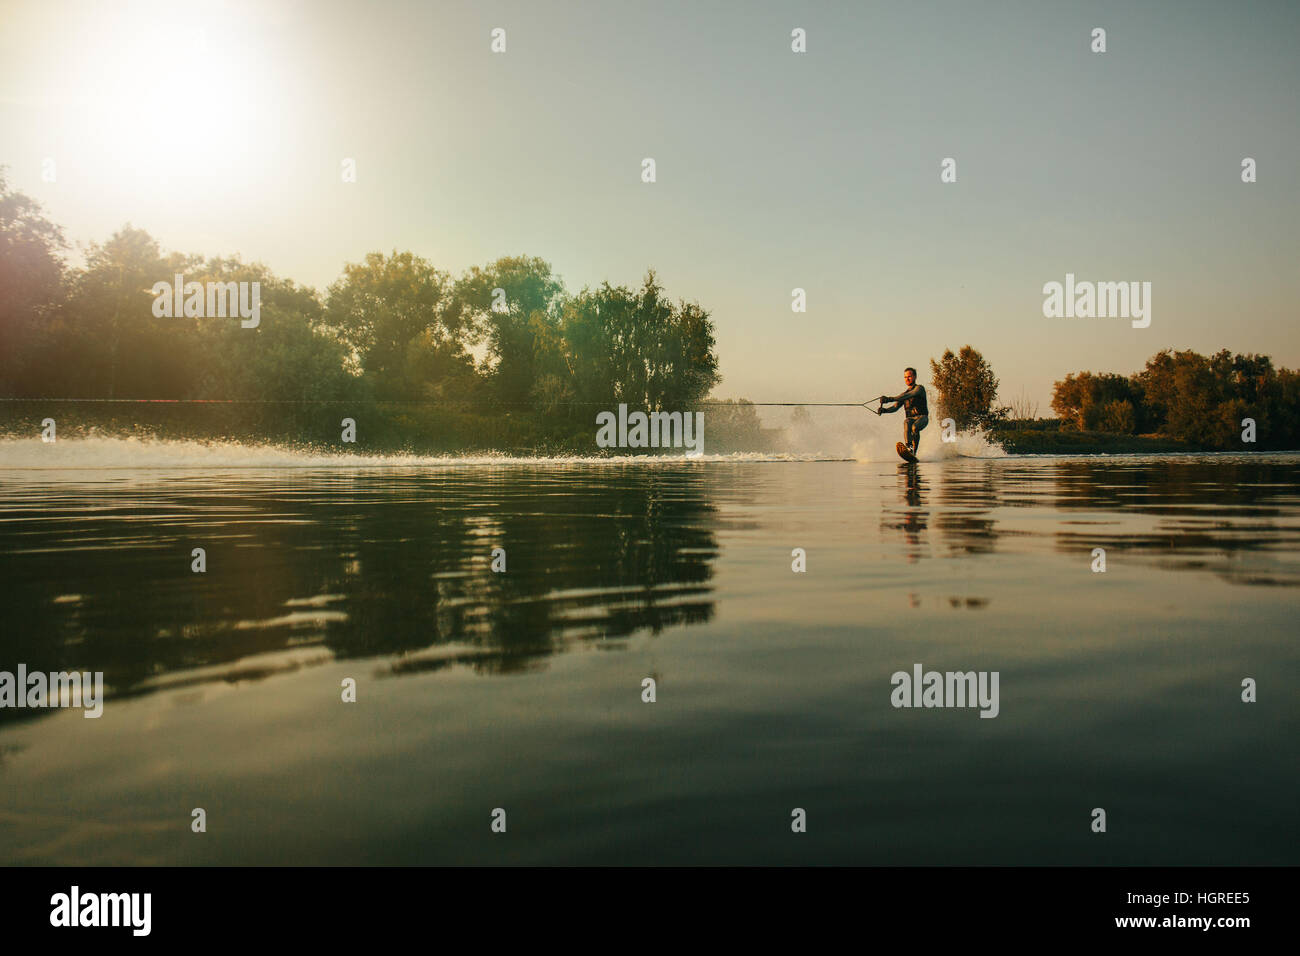 Im Freien Schuss des Mannes Wakeboarding auf See bei Sonnenuntergang. Wasserski auf See hinter einem Boot. Stockfoto